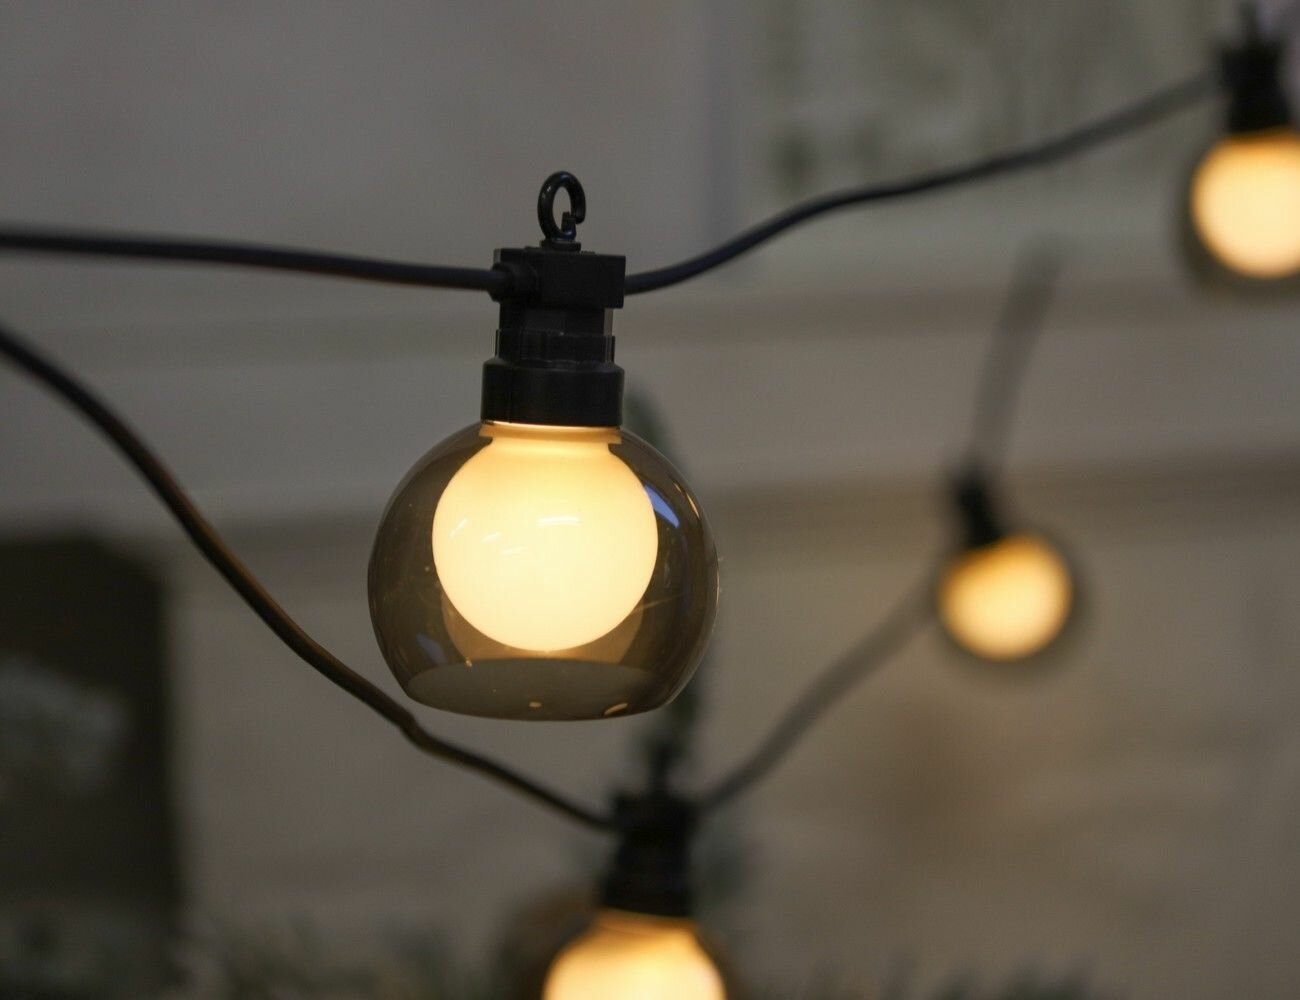 Гирлянда из лампочек для уличного зонта RETRO ROMANCE, 20 теплых белых LED-ламп, 8 нитей по 1.2 м, черный ПВХ, уличная, Kaemingk 490085